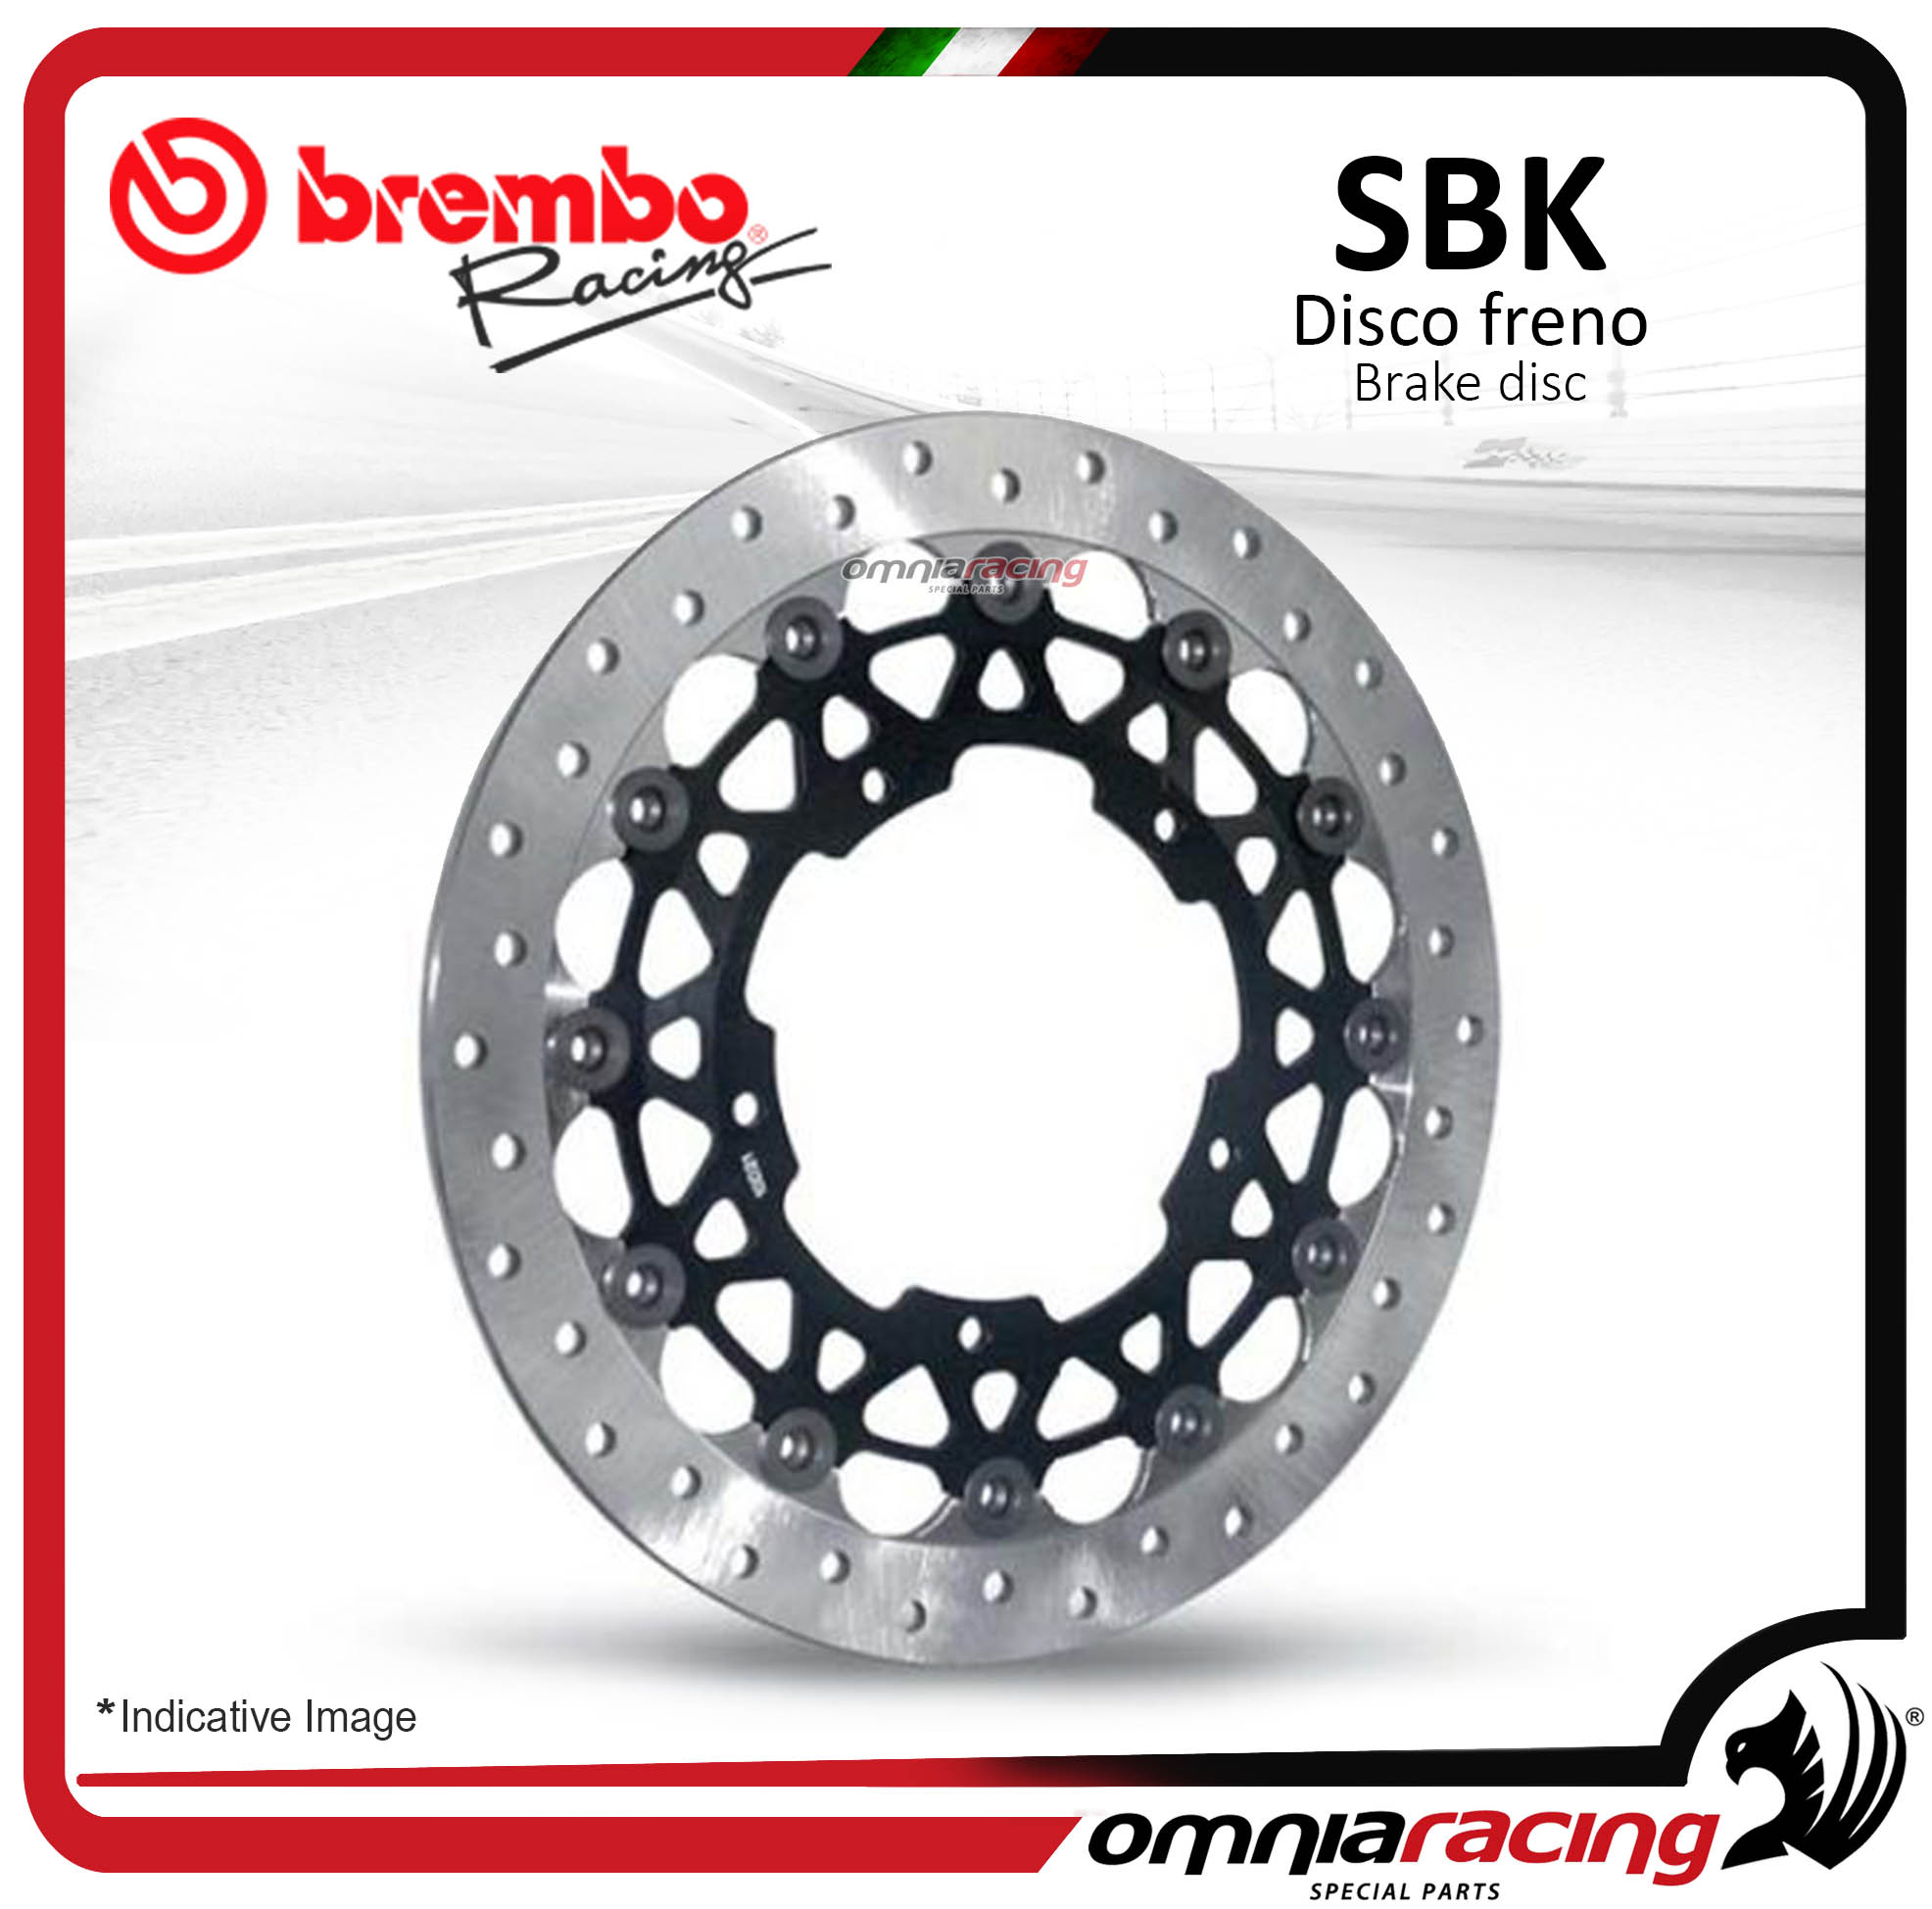 Disco Freno SBK Brembo Racing 320mm fascia frenante 30mm spessore 6mm Yamaha YZF R1 M 1000 2015>